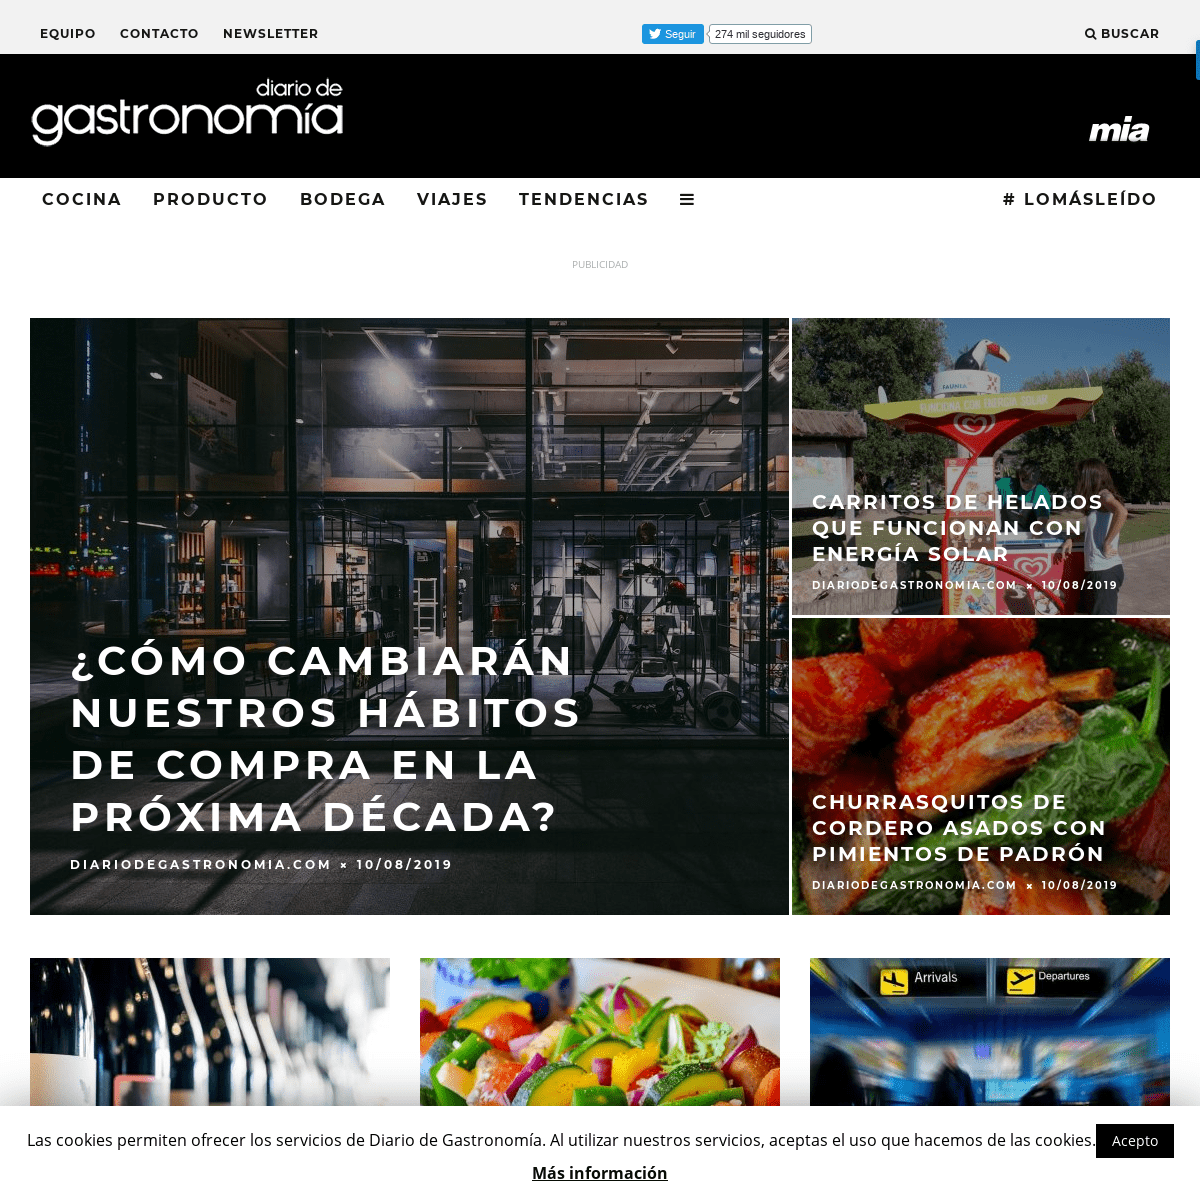 Diario de Gastronomía: Cocina, vino, gastronomía y recetas gourmet